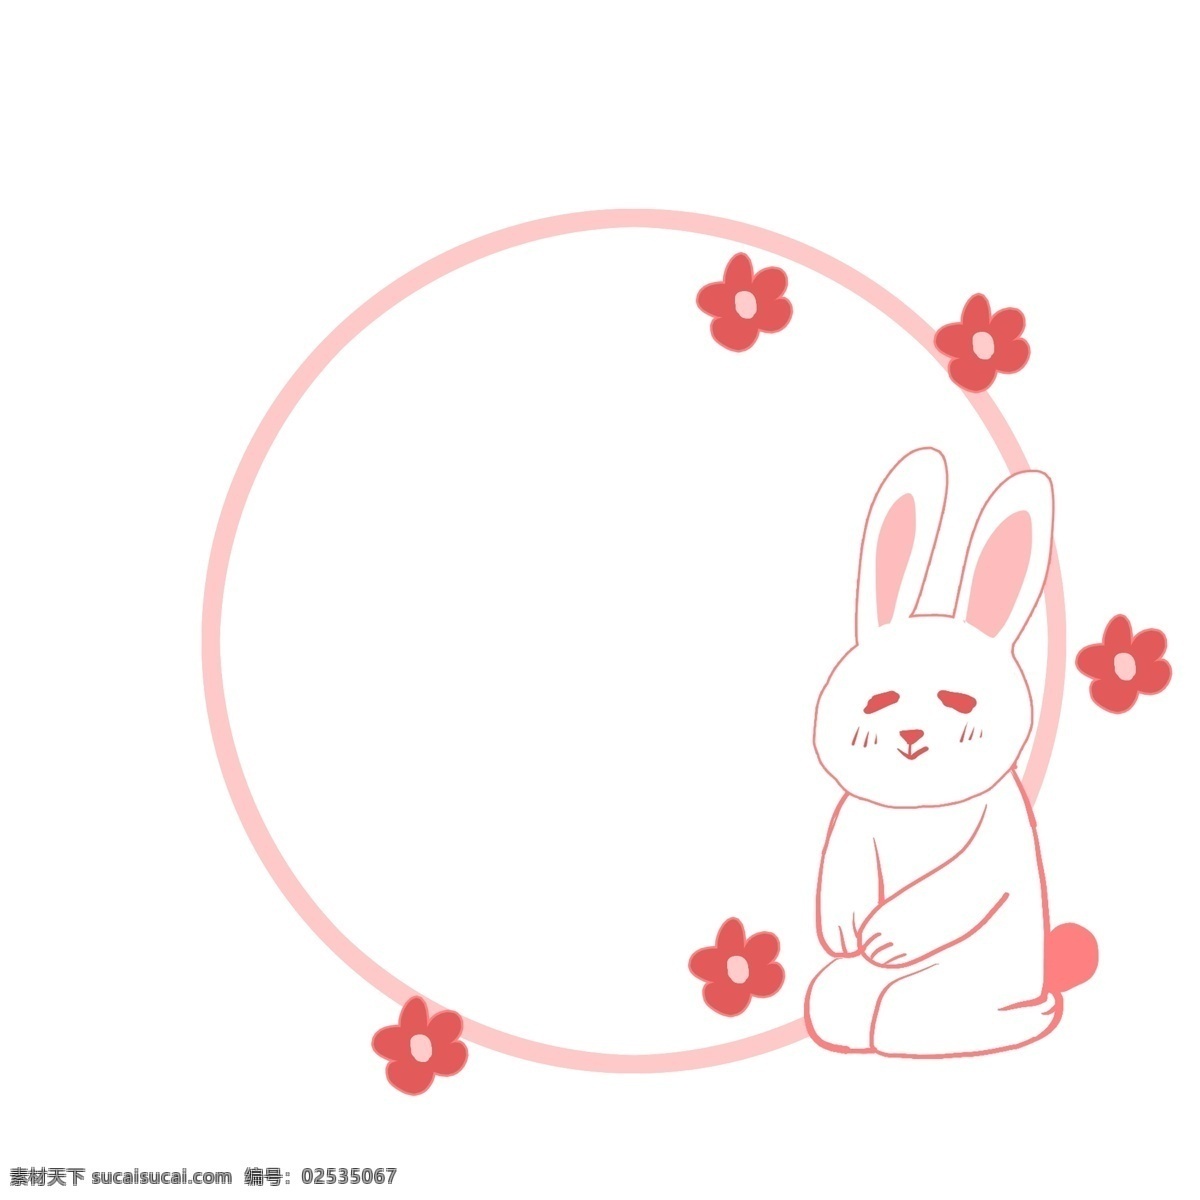 可爱 小 兔子 圆形 边框 可爱的边框 粉色小兔子 小动物边框 圆形边框 红色花朵 花卉边框 卡通边框